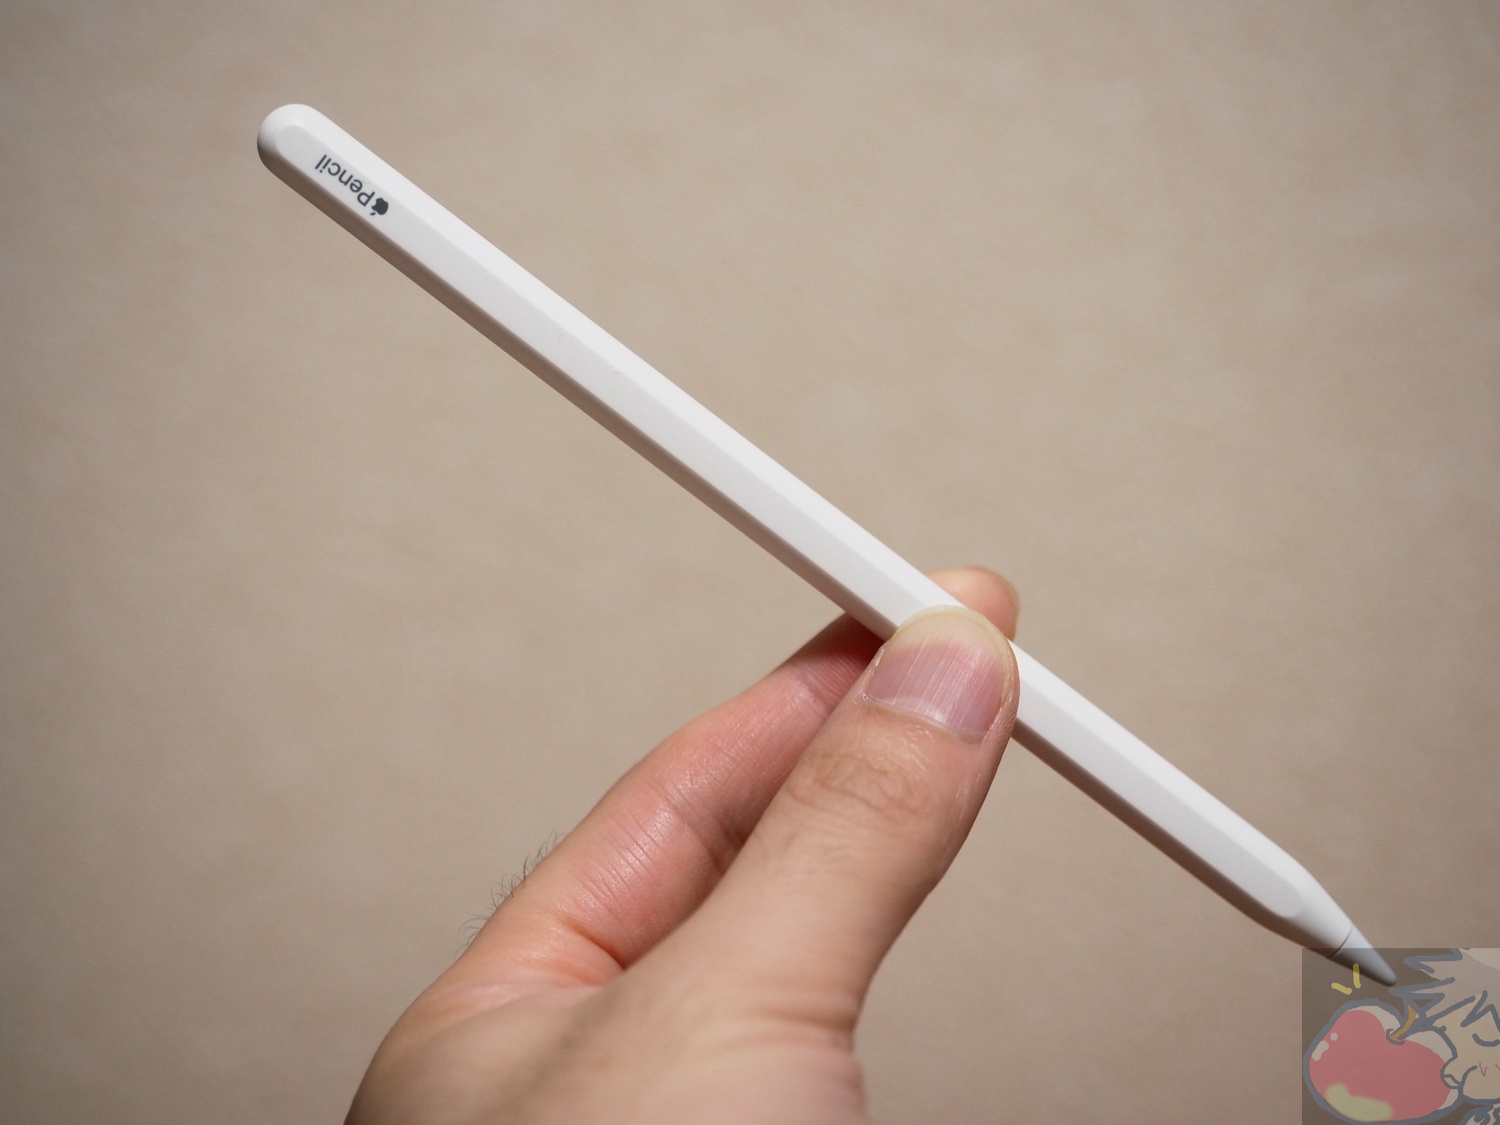 スペースグレイモデル番号Apple Pencil付き iPad 9.7インチ(2018年モデル)超美品